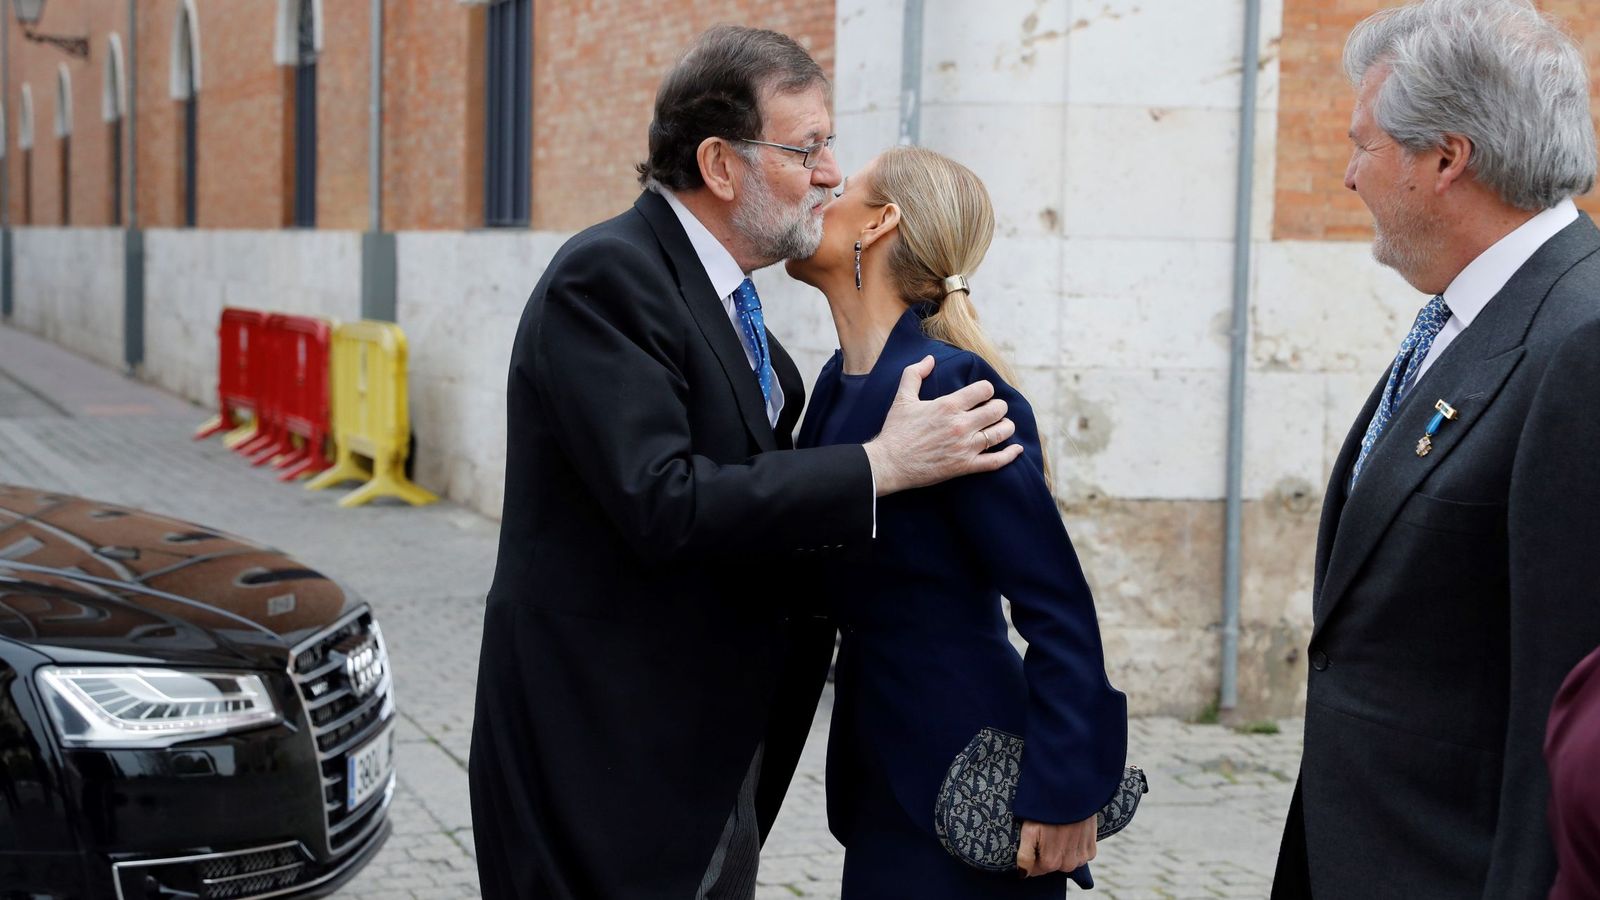 Foto: Imagen de archivo del presidente del Gobierno, Mariano Rajoy (i), saludando a la presidenta de la Comunidad de Madrid, Cristina Cifuentes. (EFE)